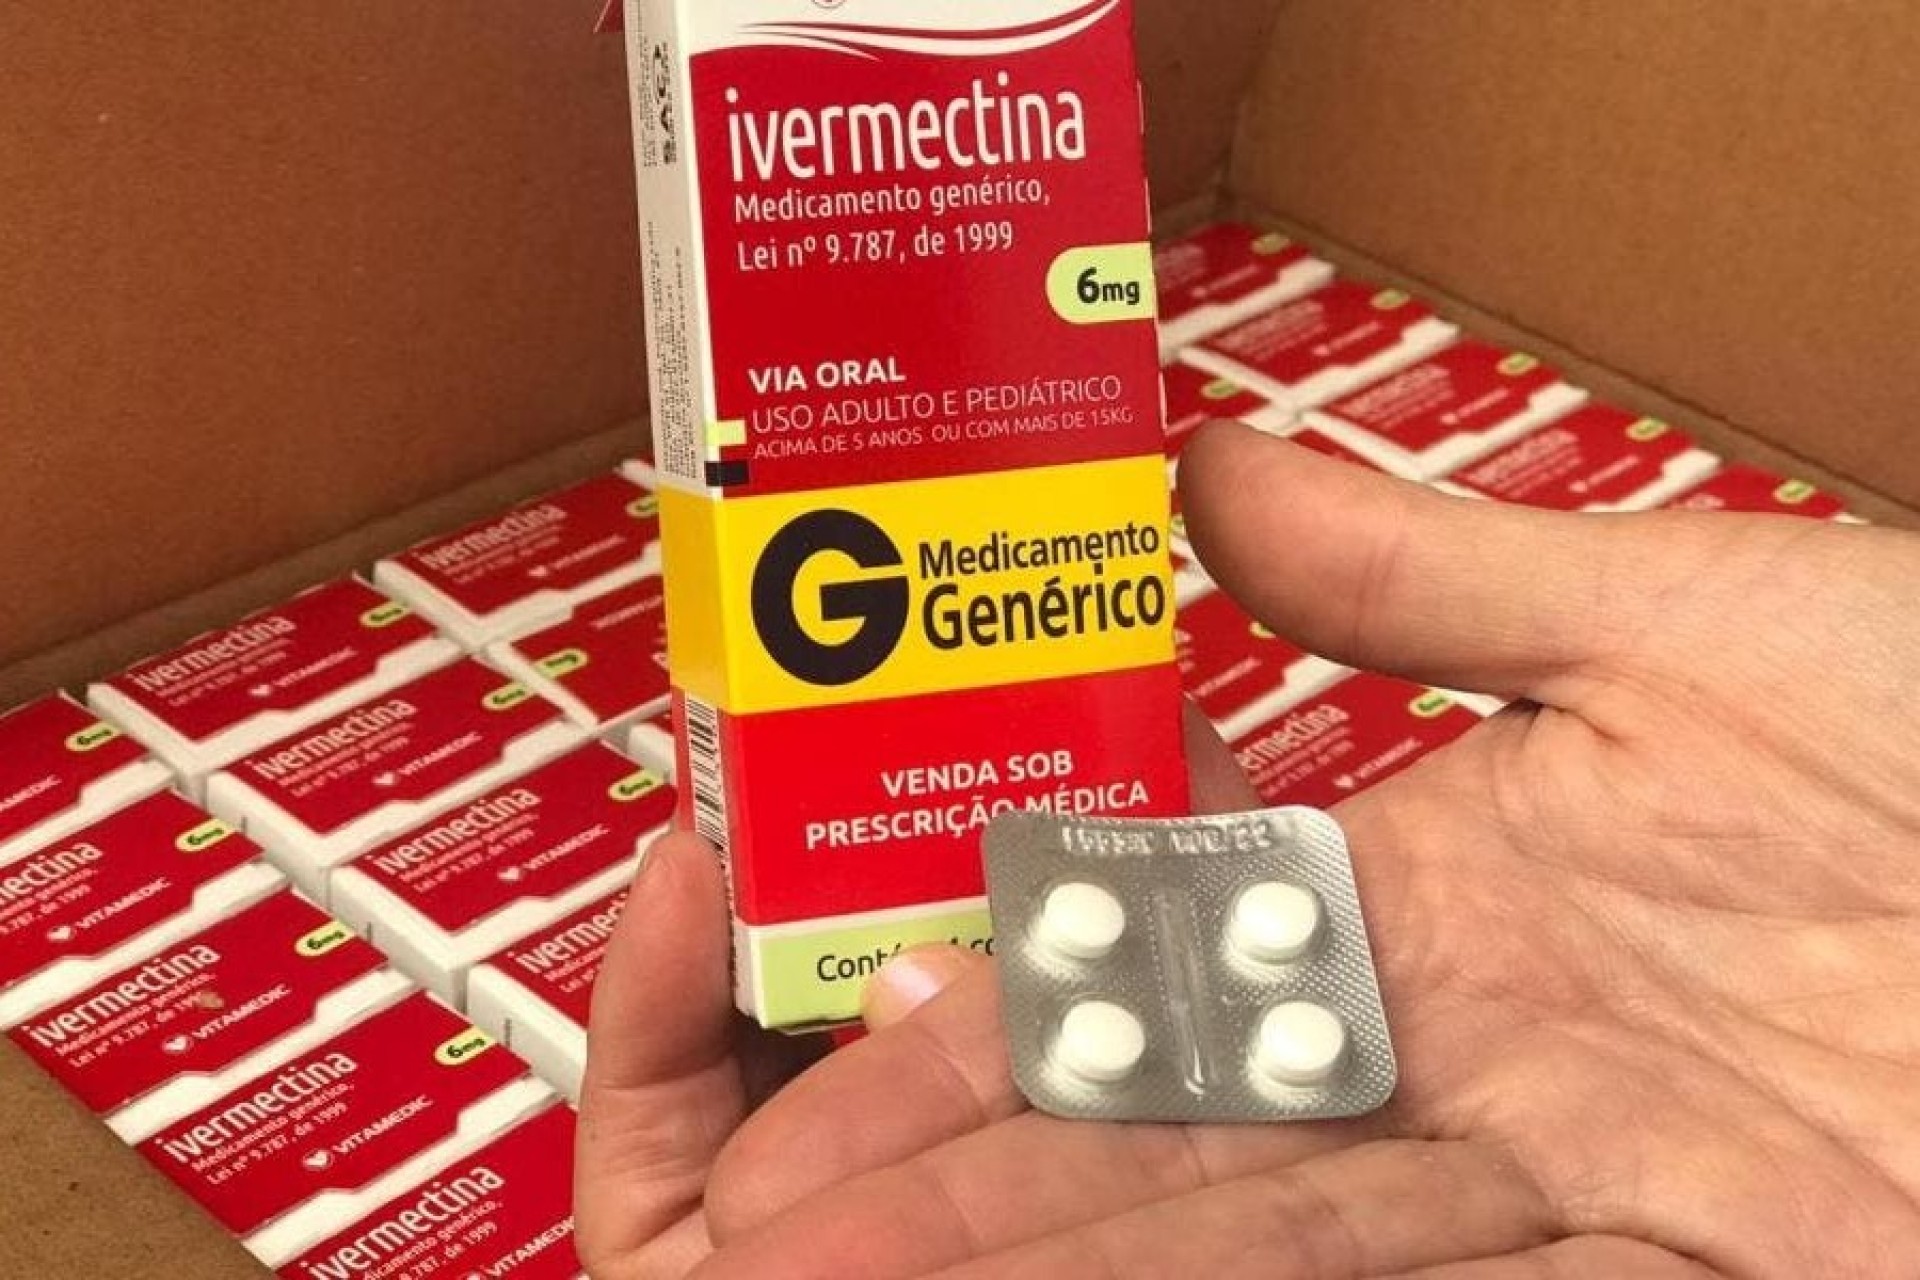 Ivermectina só poderá ser vendida com receita enquanto durar a pandemia, decide Anvisa